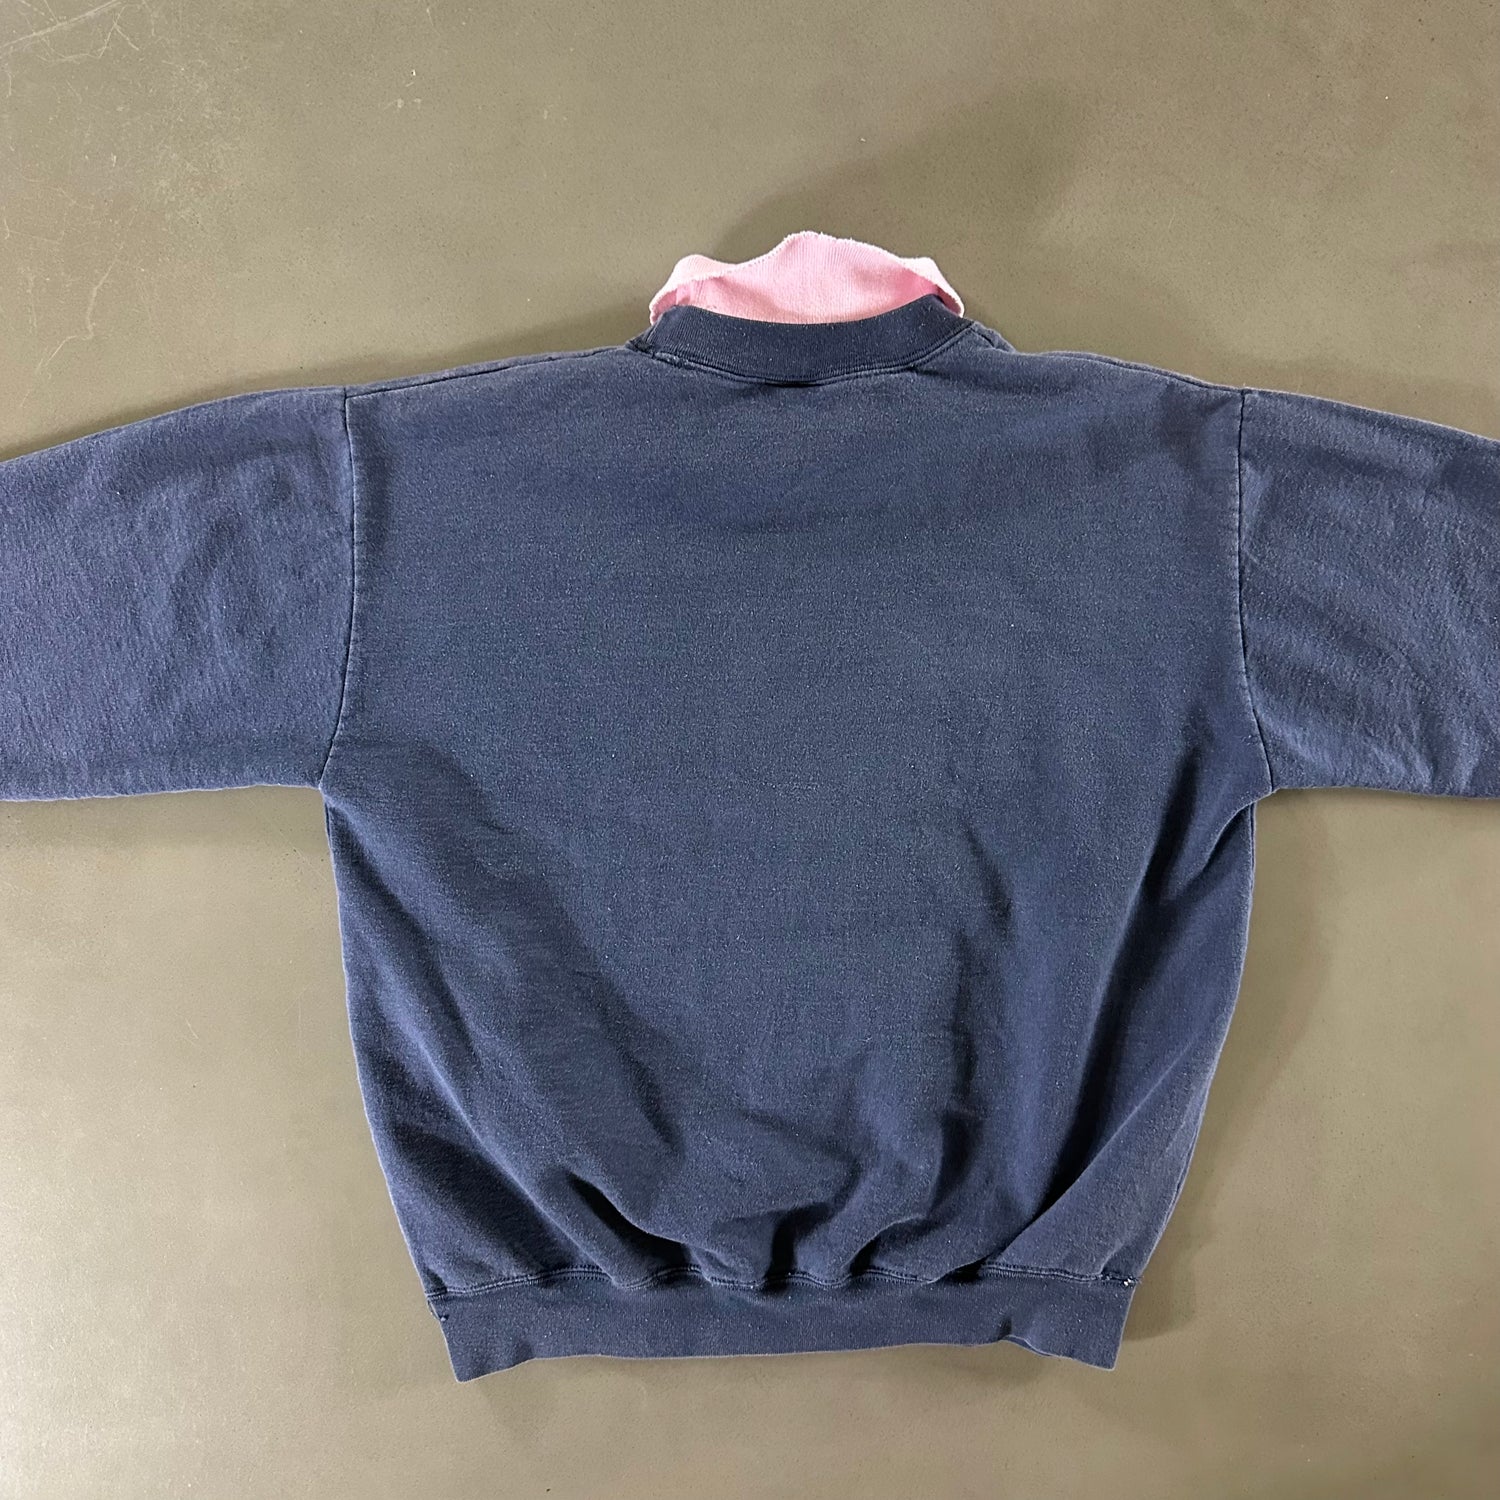 Vintage 1990s Kitty Cat Sweatshirt size Medium